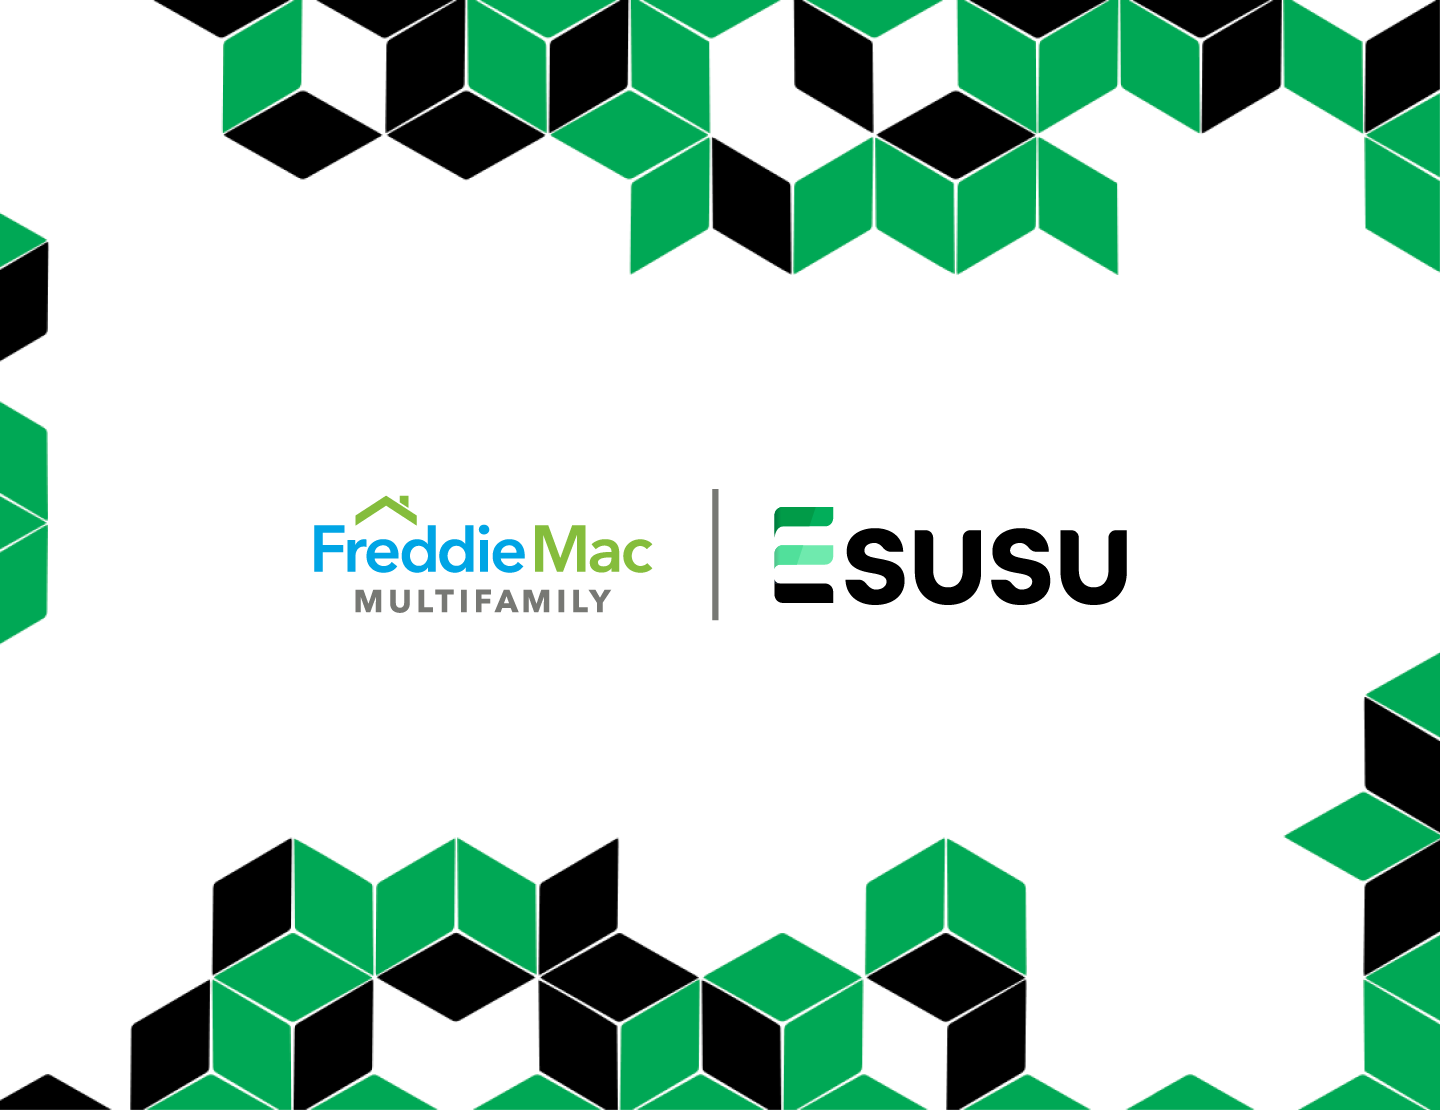 Freddie Mac and Esusu Logo in a themed border